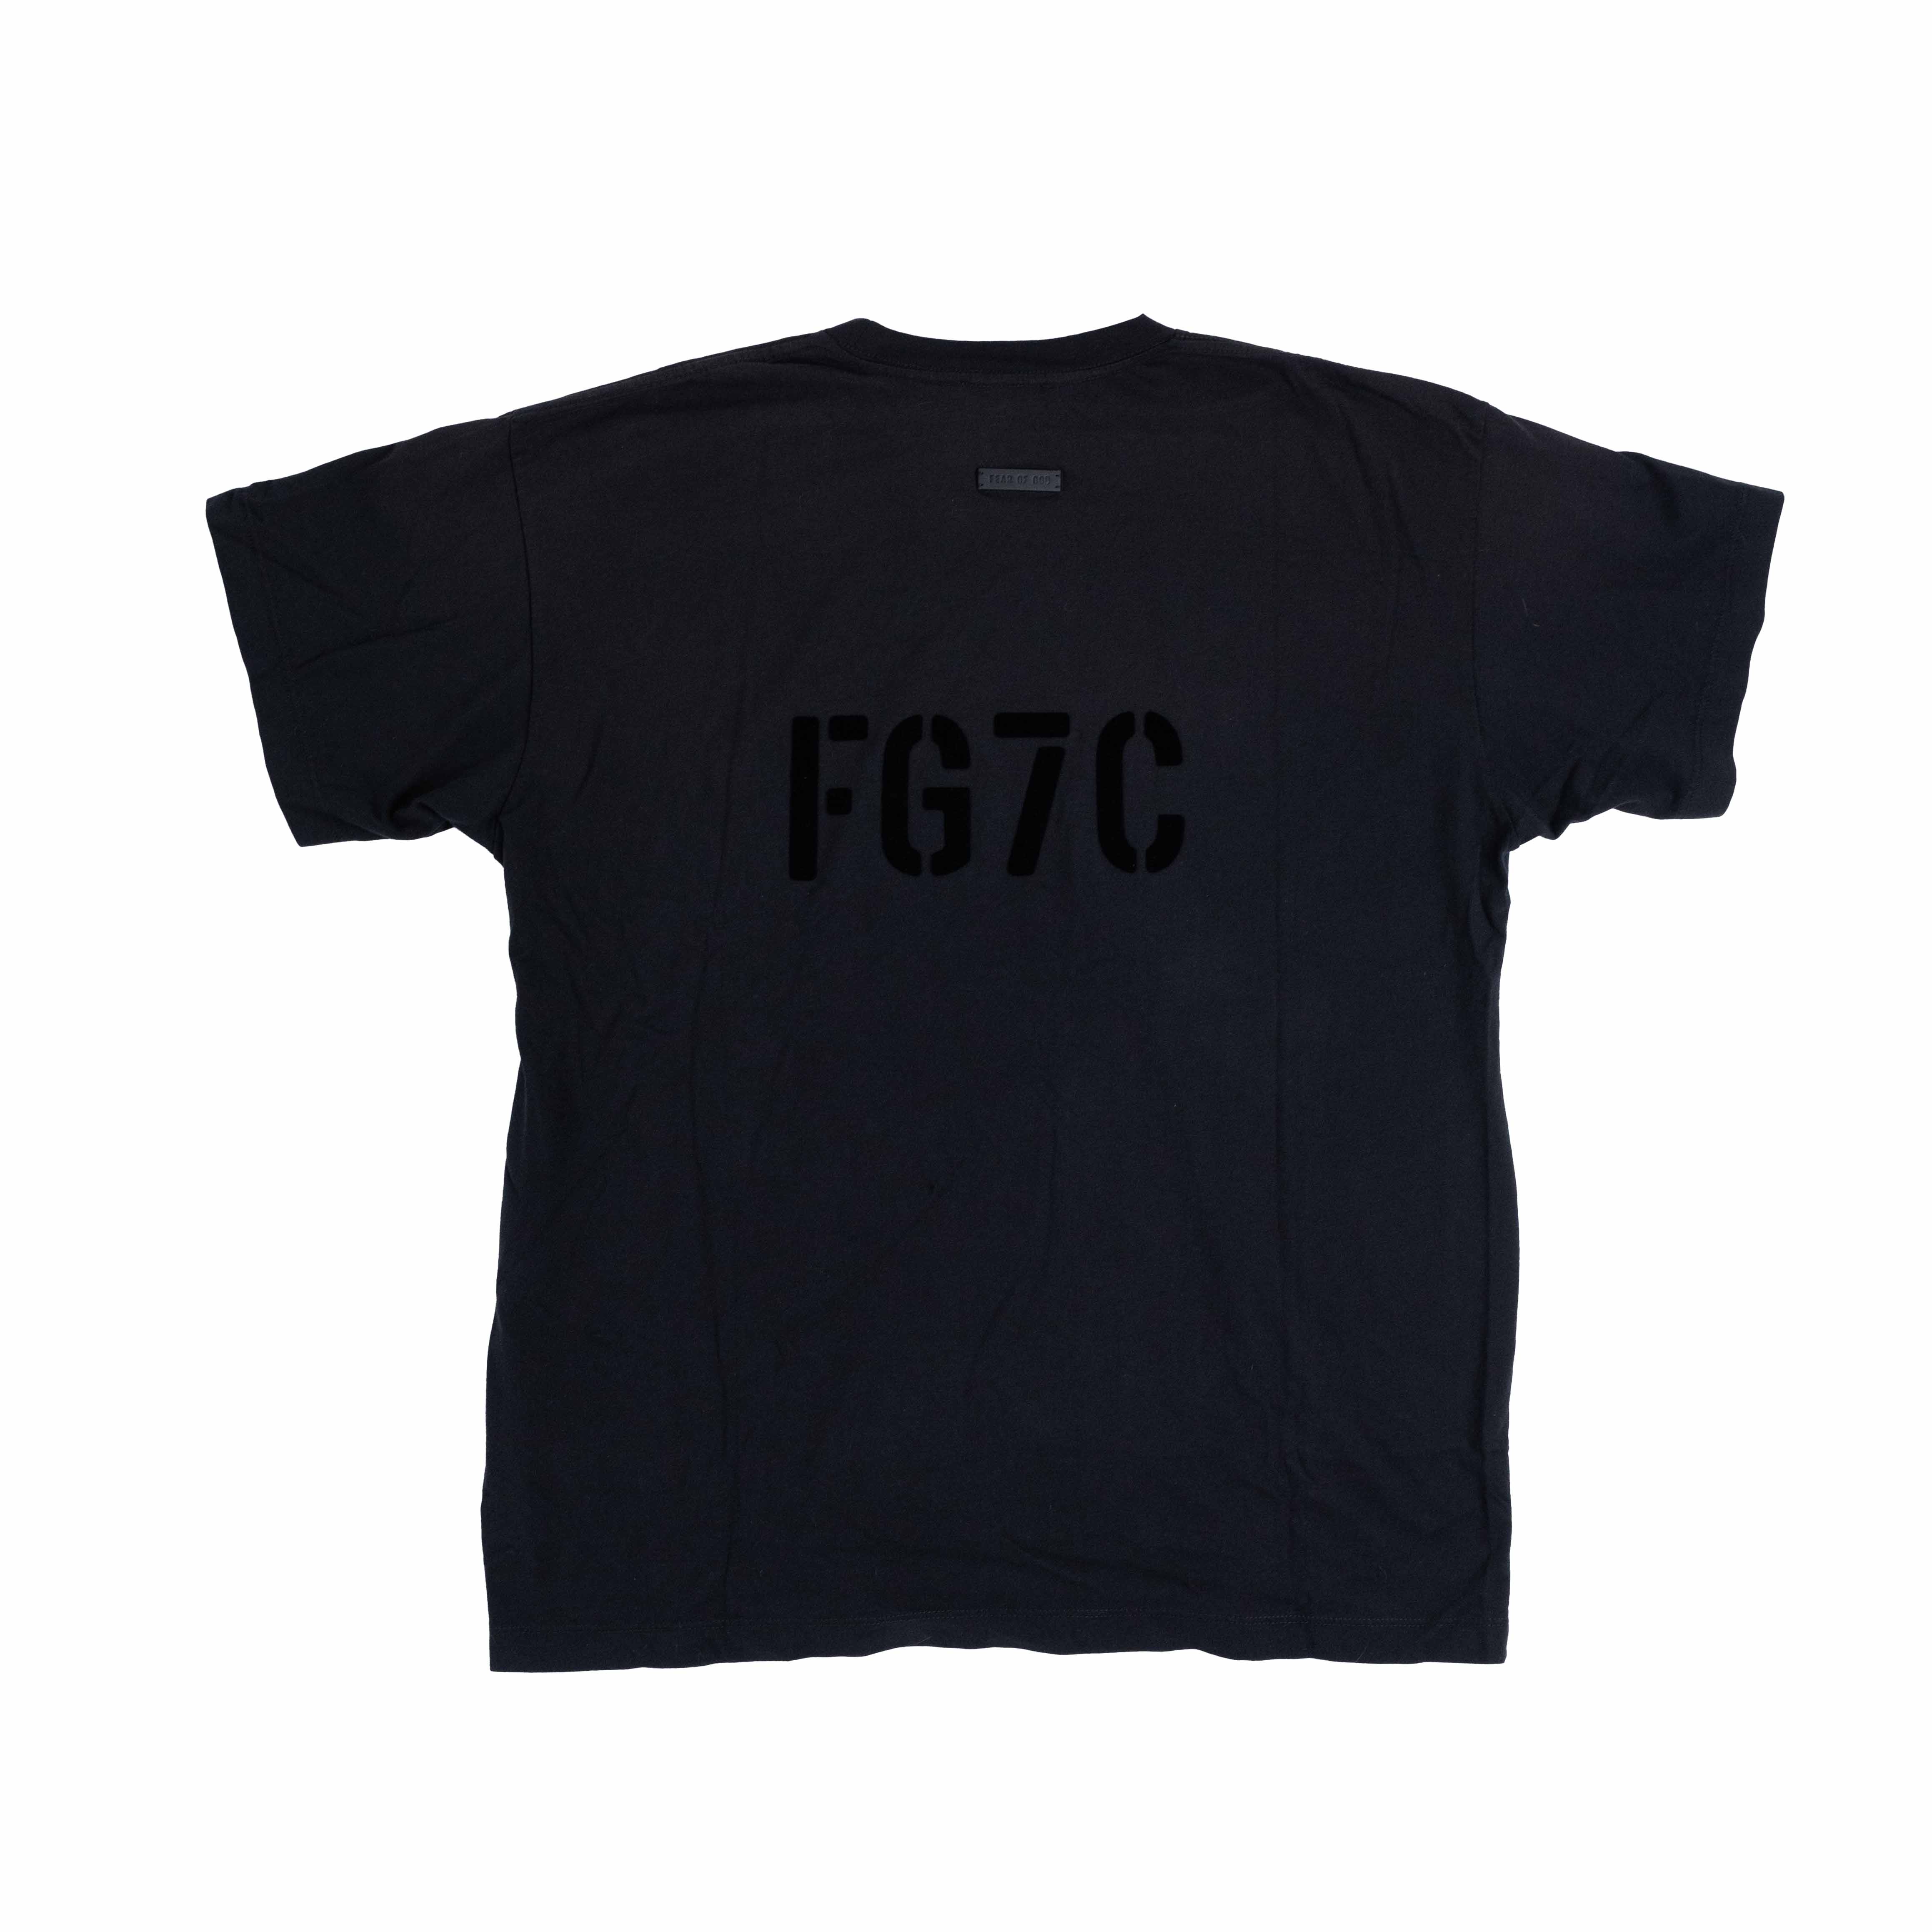 Fear of god] FG7C vintage T-shirt 黑色| 所有商品- Inncense